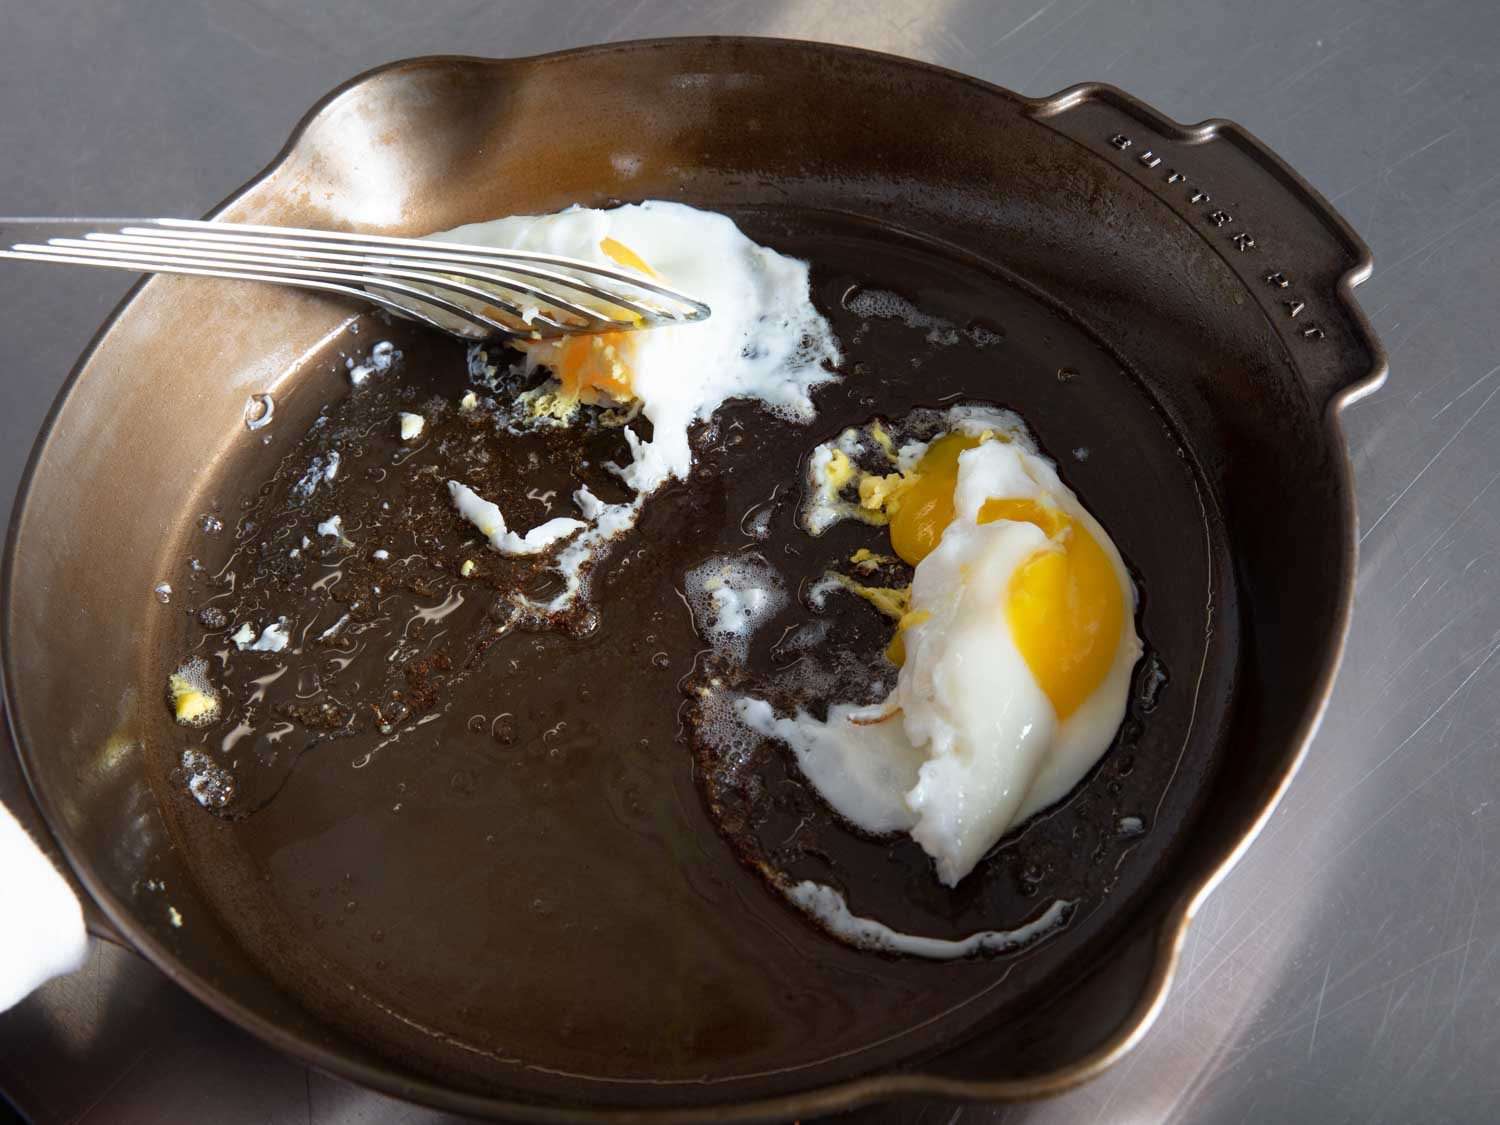 几乎每一个煎锅里都有鸡蛋卡住，比如图中所示的黄油煎锅里，当锅铲试图把鸡蛋提起来时，鸡蛋就会撕裂。